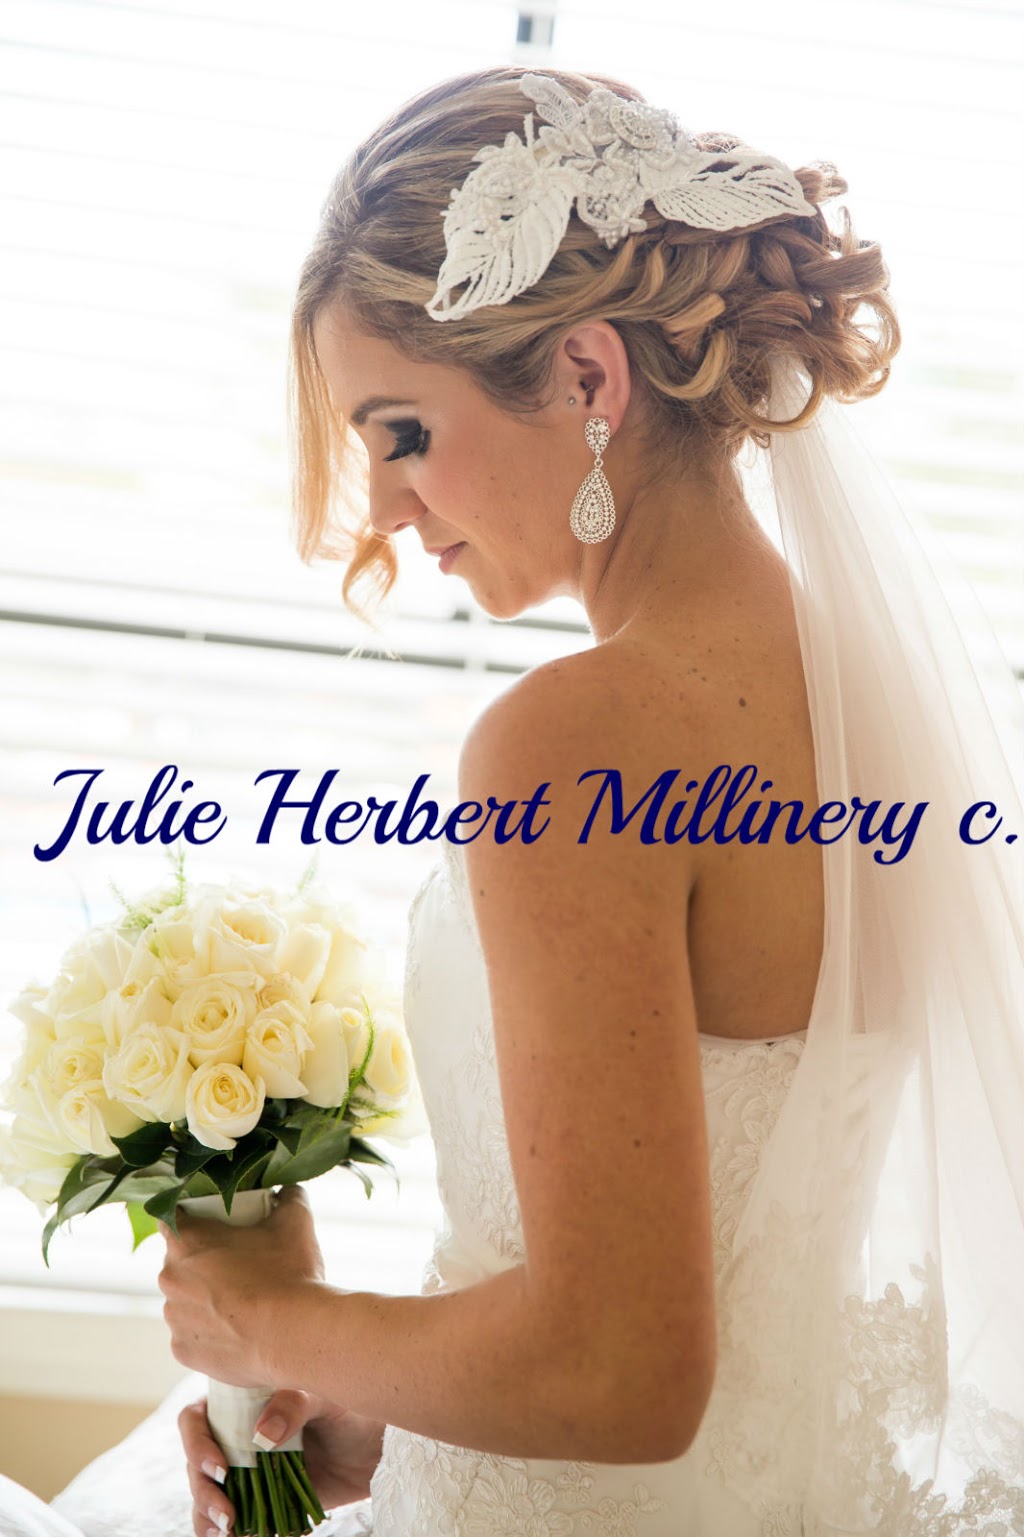 Julie Herbert Millinery | clothing store | 5 Etna St, Orange NSW 2800, Australia | 0405241633 OR +61 405 241 633